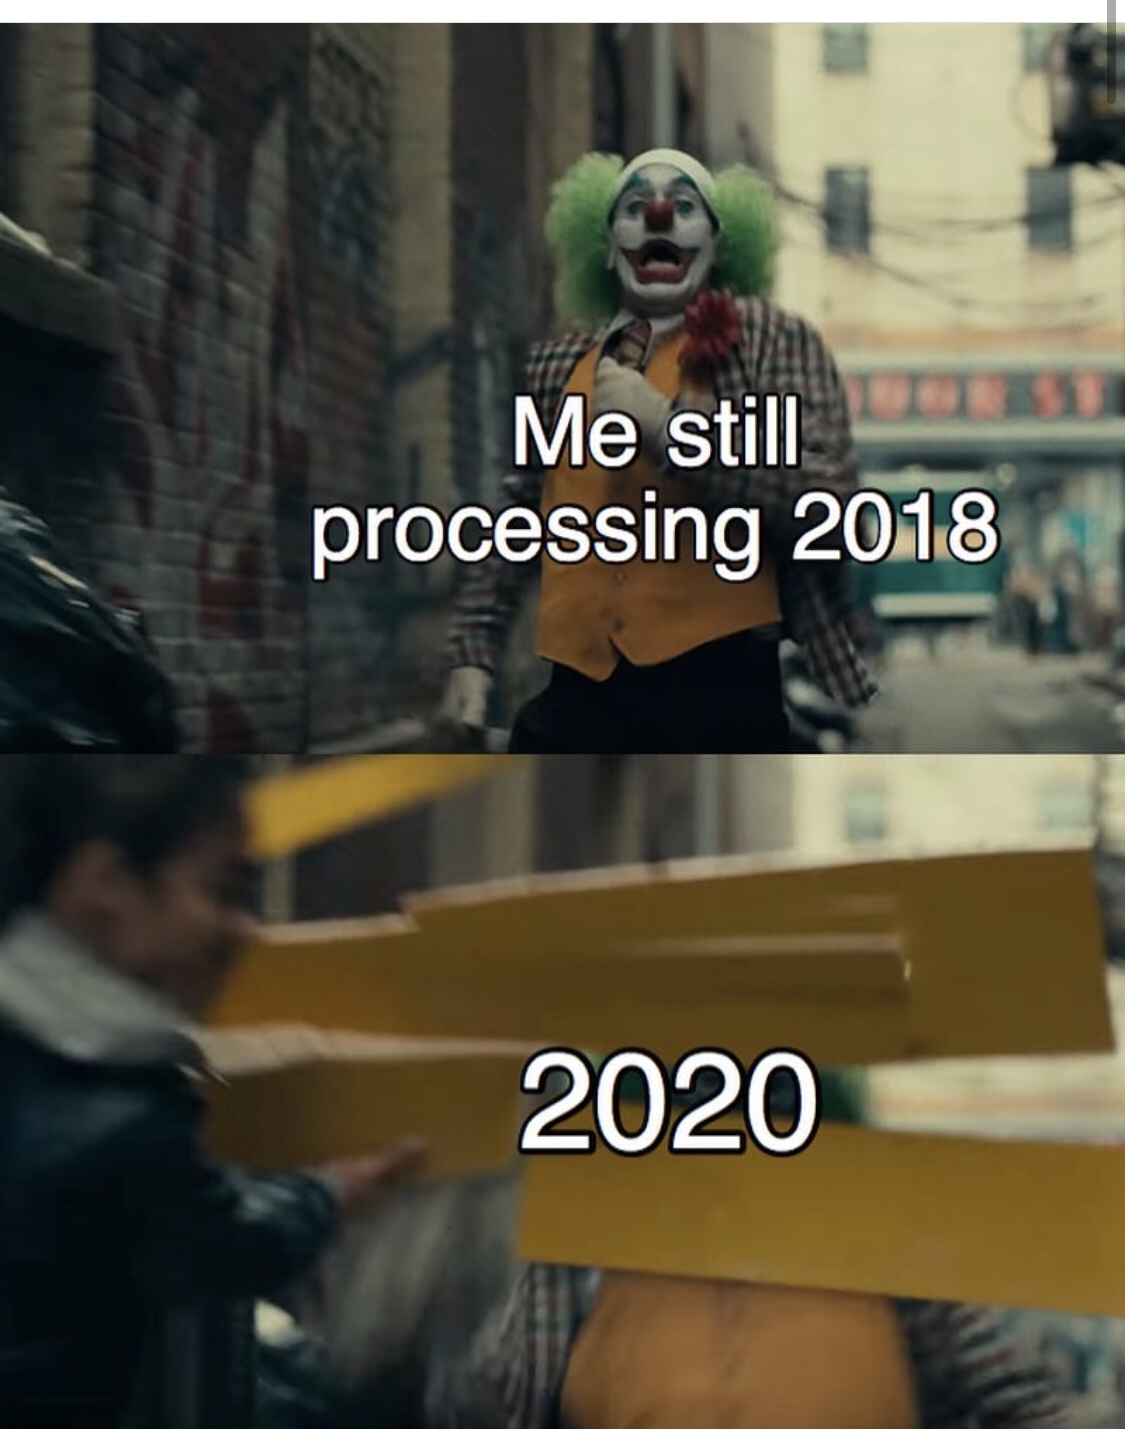 joker memes reddit - Me still processing 2018 2020